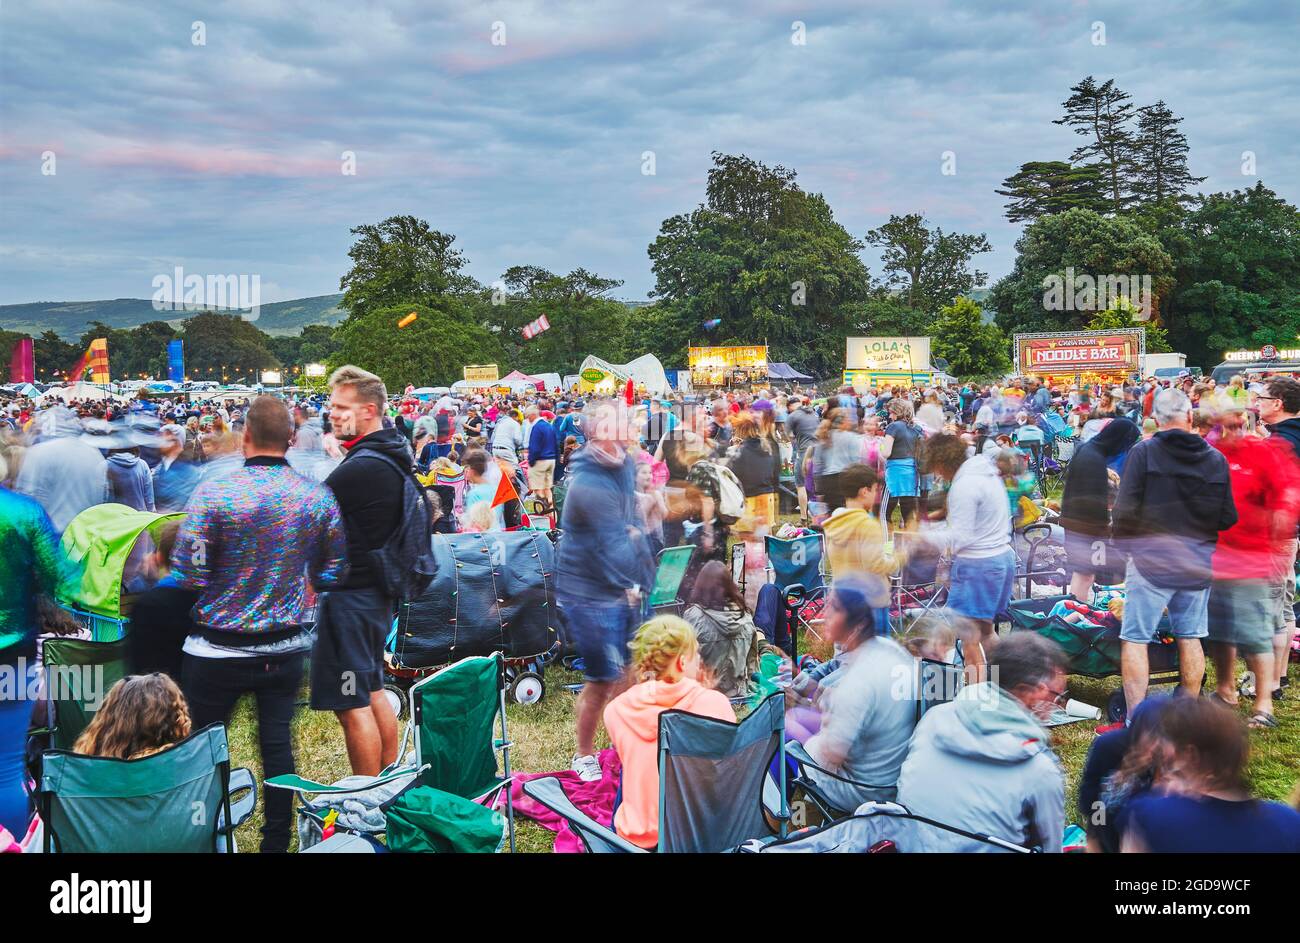 Une vue au crépuscule de la foule de spectateurs devant la scène principale du Camp Bestival, un festival de musique annuel familial à Lulworth, Dorset, Royaume-Uni Banque D'Images